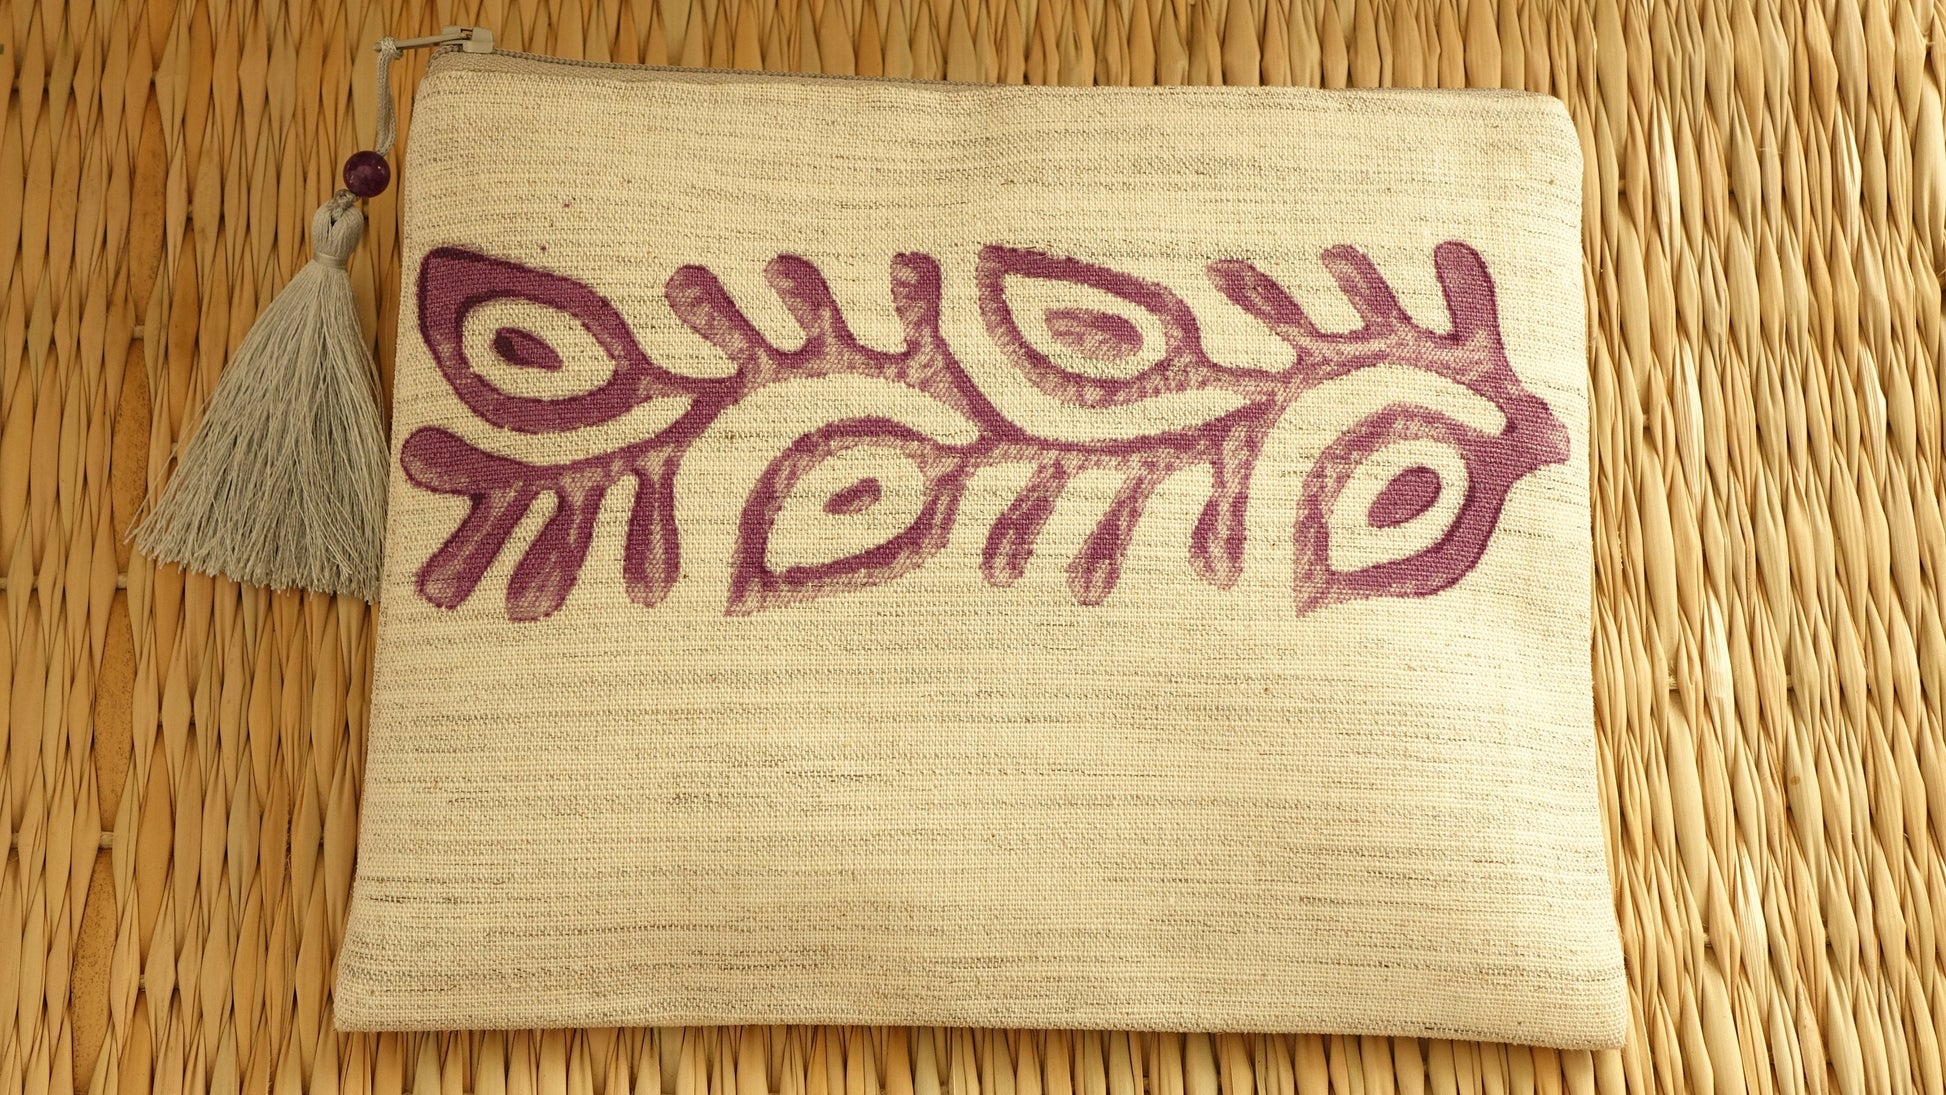 Handmade Block Printed Clutch / Hand Purple Painted Bag - Verna Artisan Works